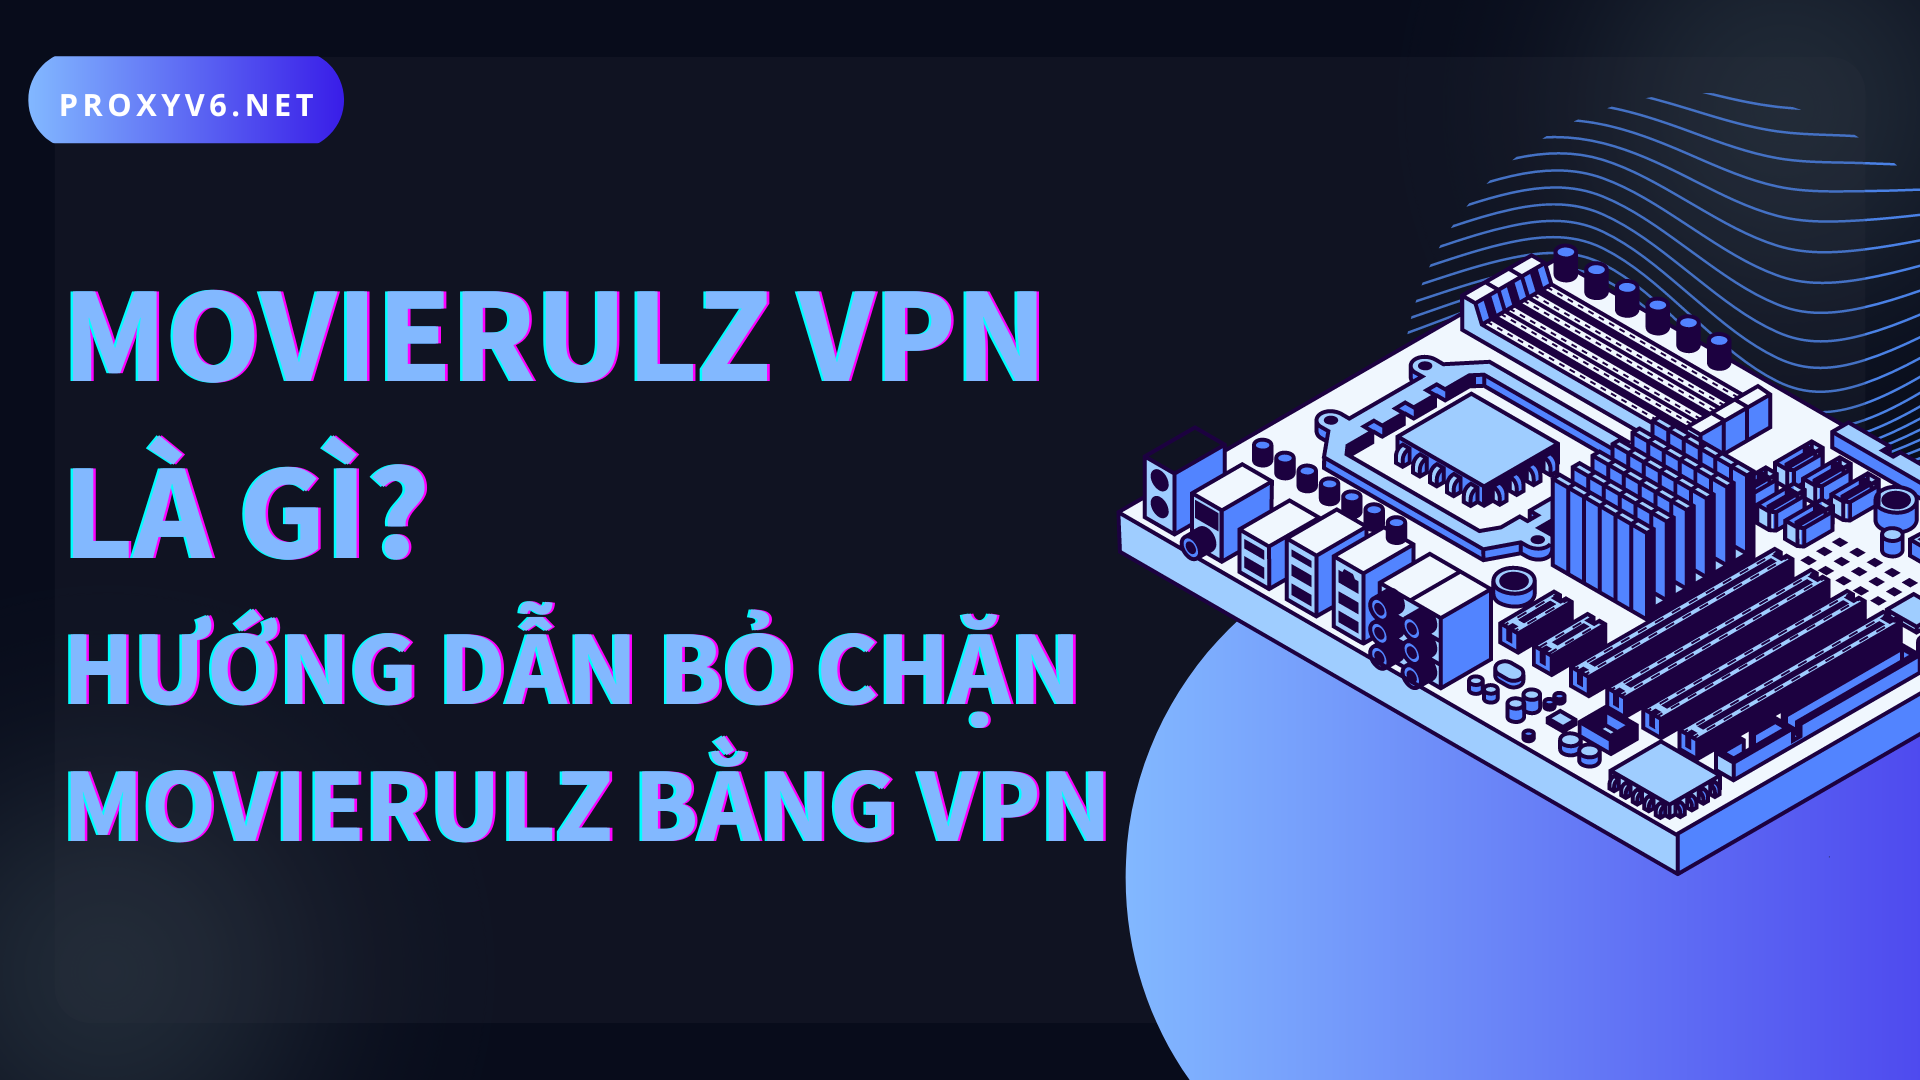 Movierulz VPN là gì? Hướng dẫn bỏ chặn Movierulz bằng VPN